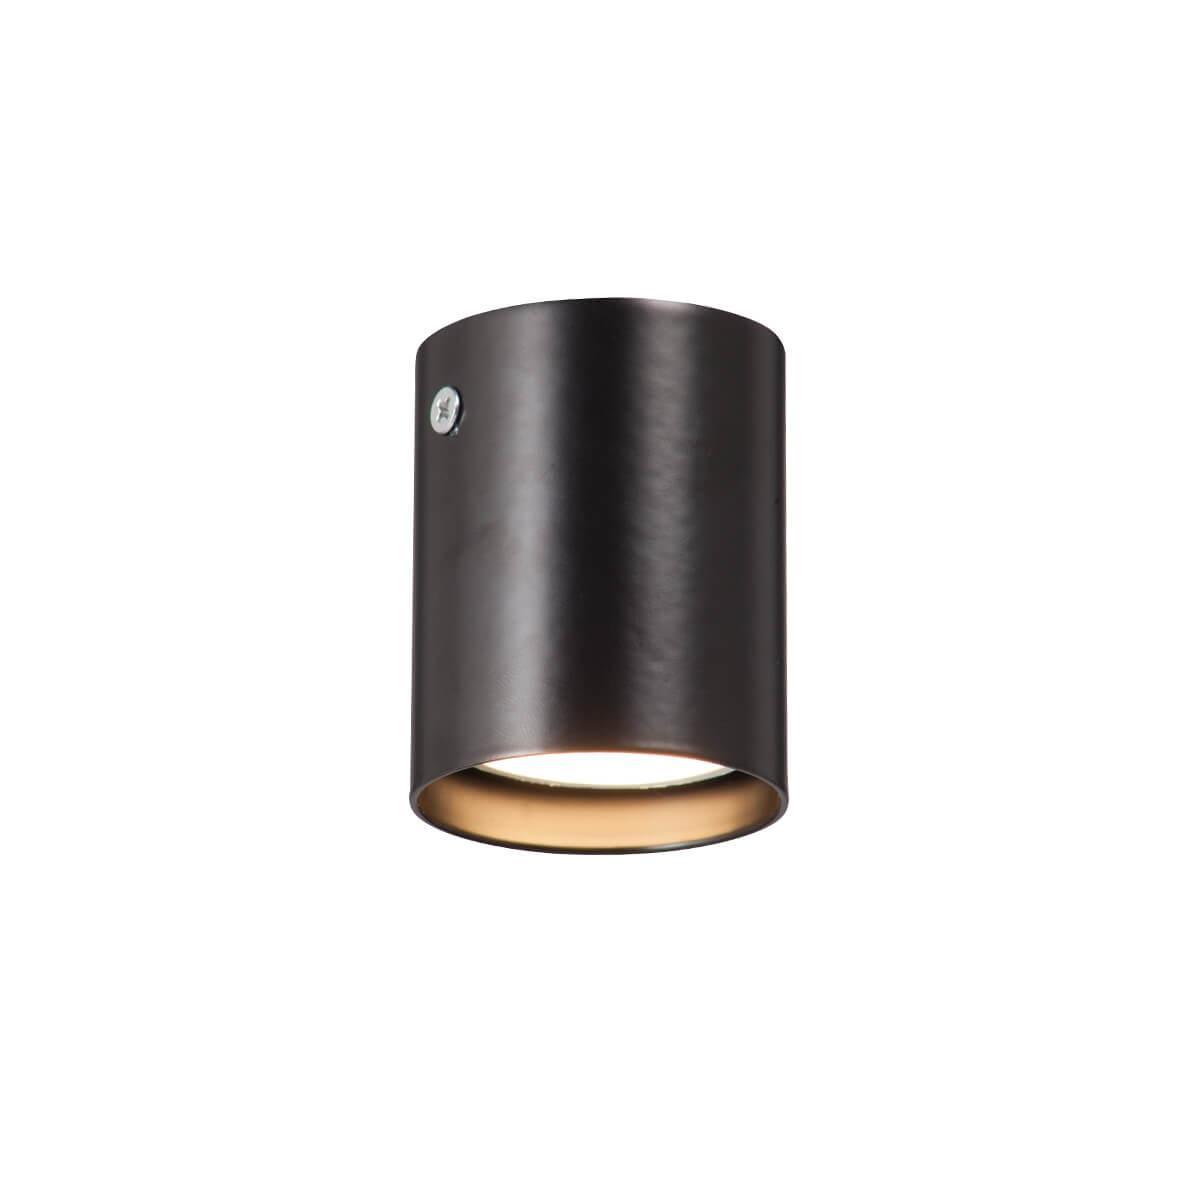 Накладной светильник Vitaluce V4639-1/1PL светильник накладной заливающего света со встроенными светодиодами forte muro 213850